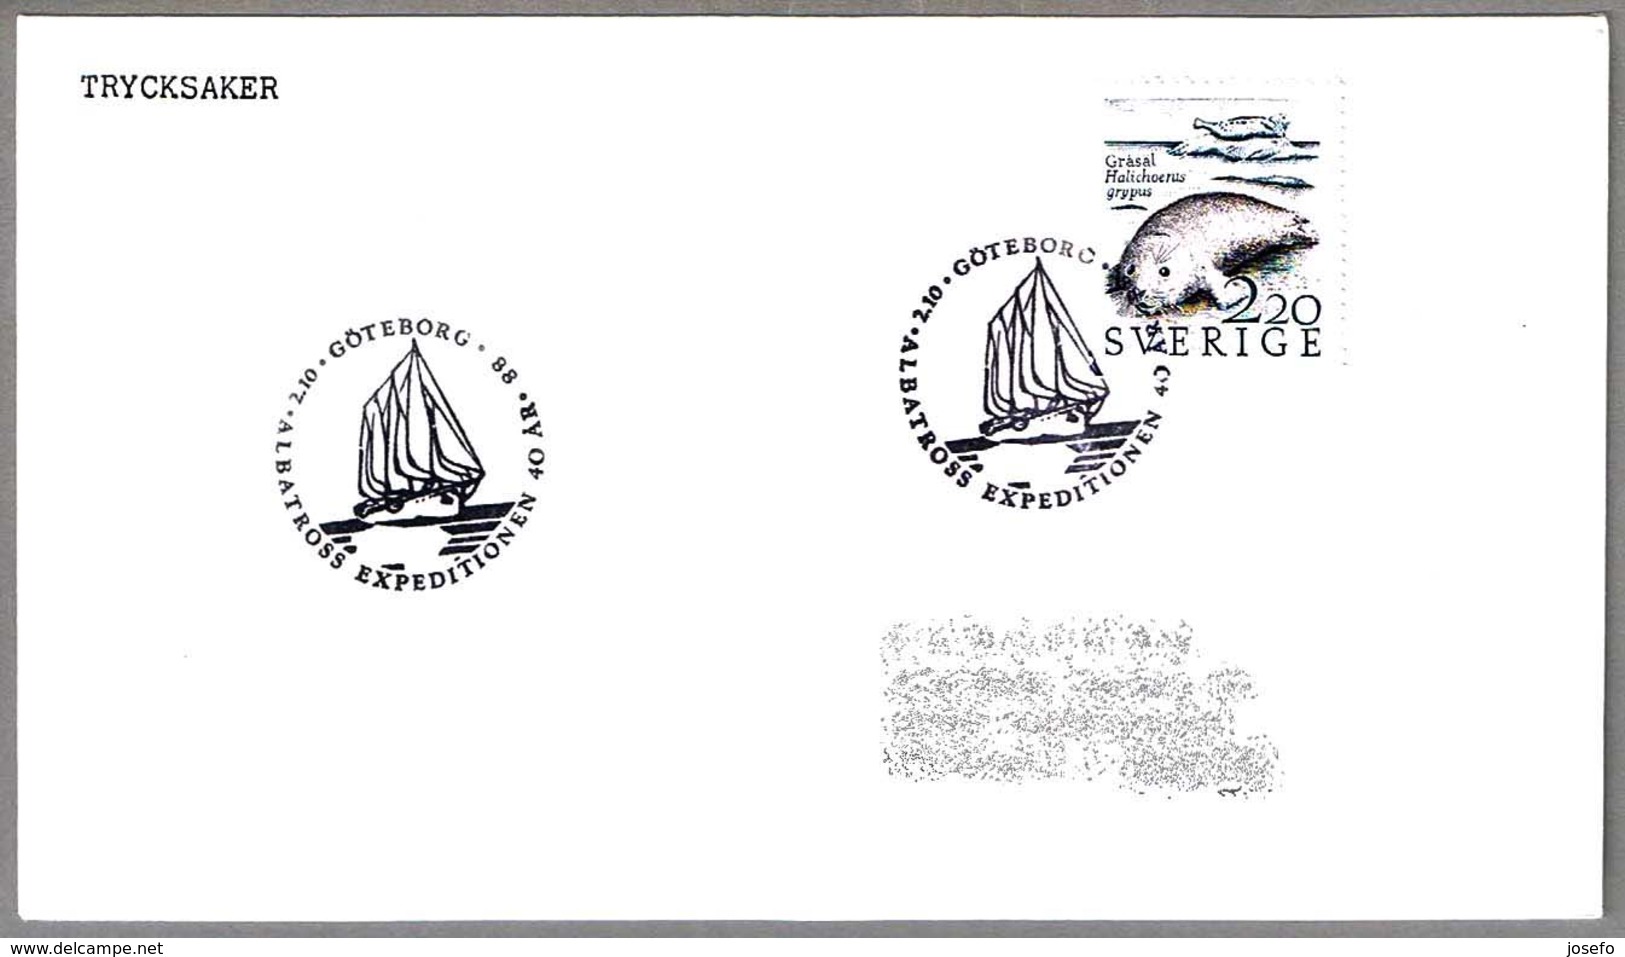 Expedicion Oceanografica ALBATROSS (1947-48) - Oceanographic Expedition. Goteborg, Suecia, 1988 - Barcos